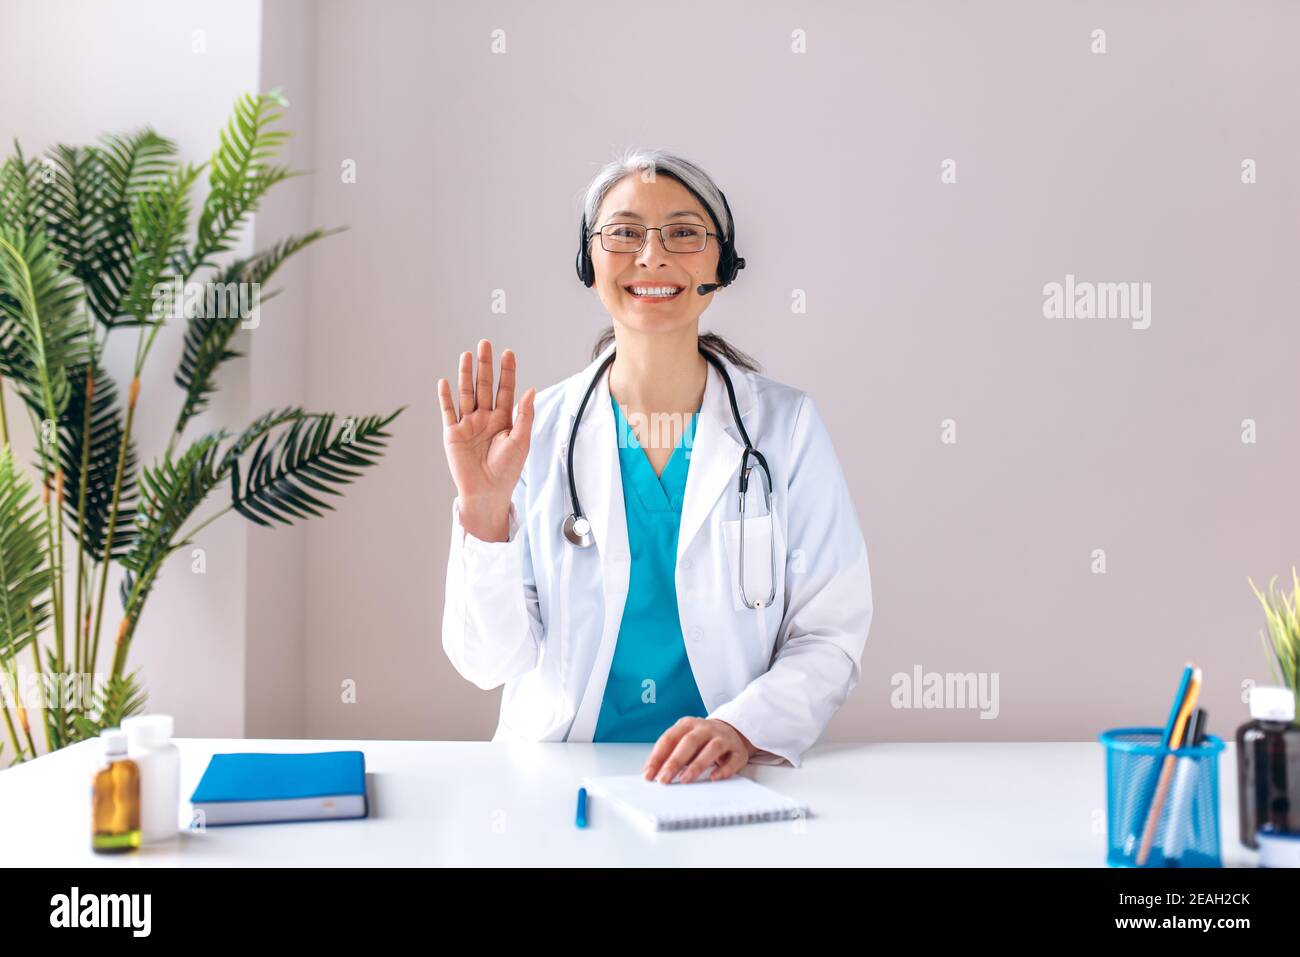 Die grauhaarige Ärztin im mittleren Alter trägt ein Headset, schaut auf die Kamera und lächelt. Remote-Online-medizinische Beratung, Medizin Ferndienste, virtuelle medizinische Hilfe Konzept Stockfoto